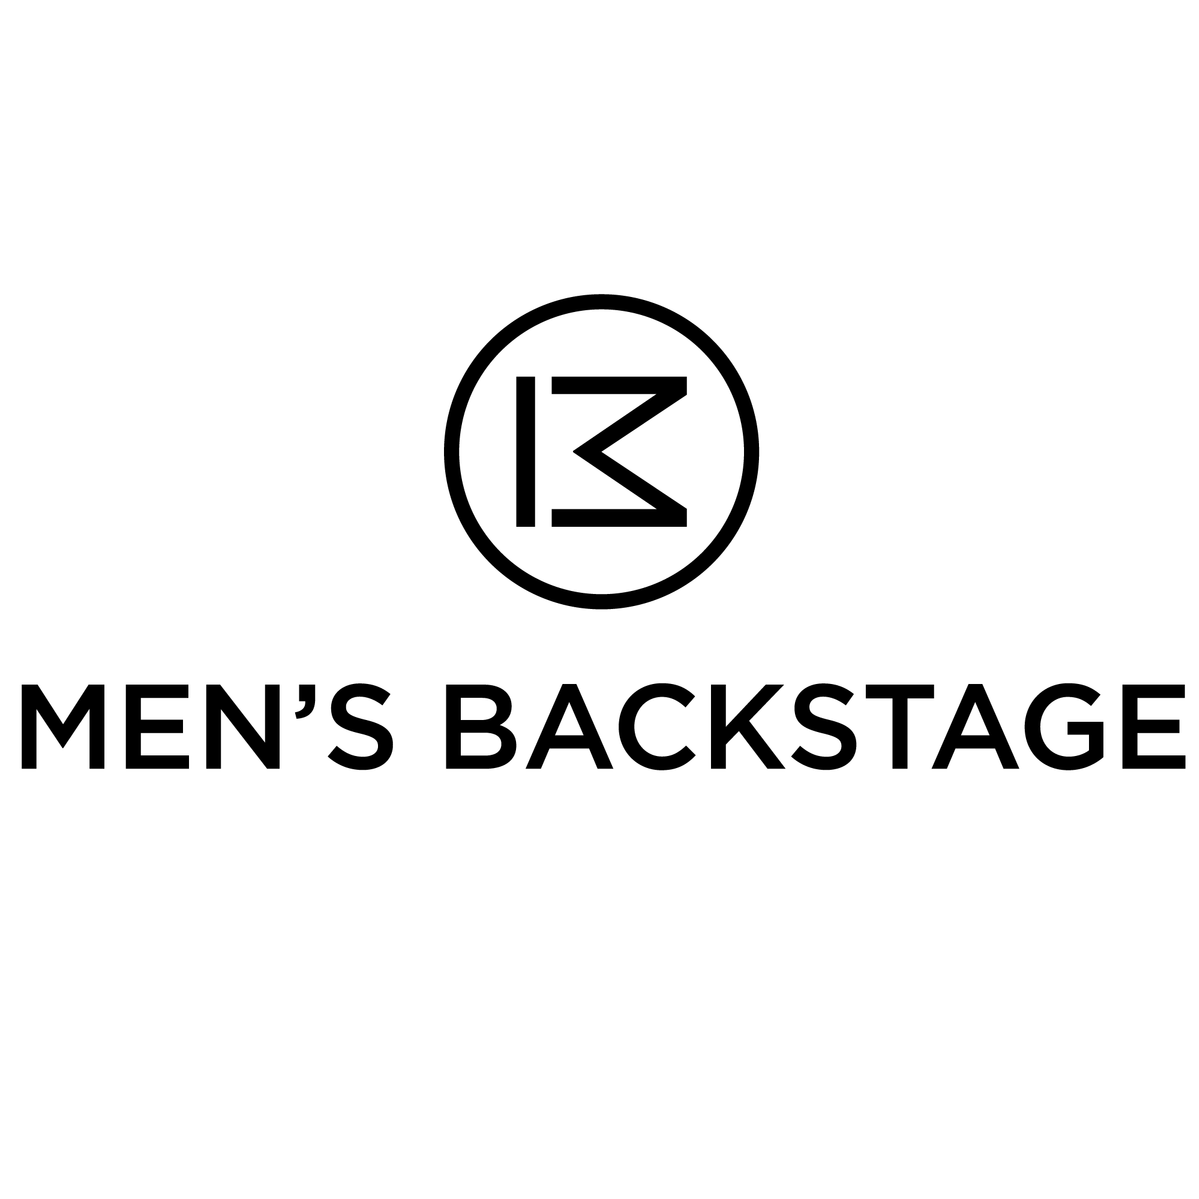 Men's Backstage